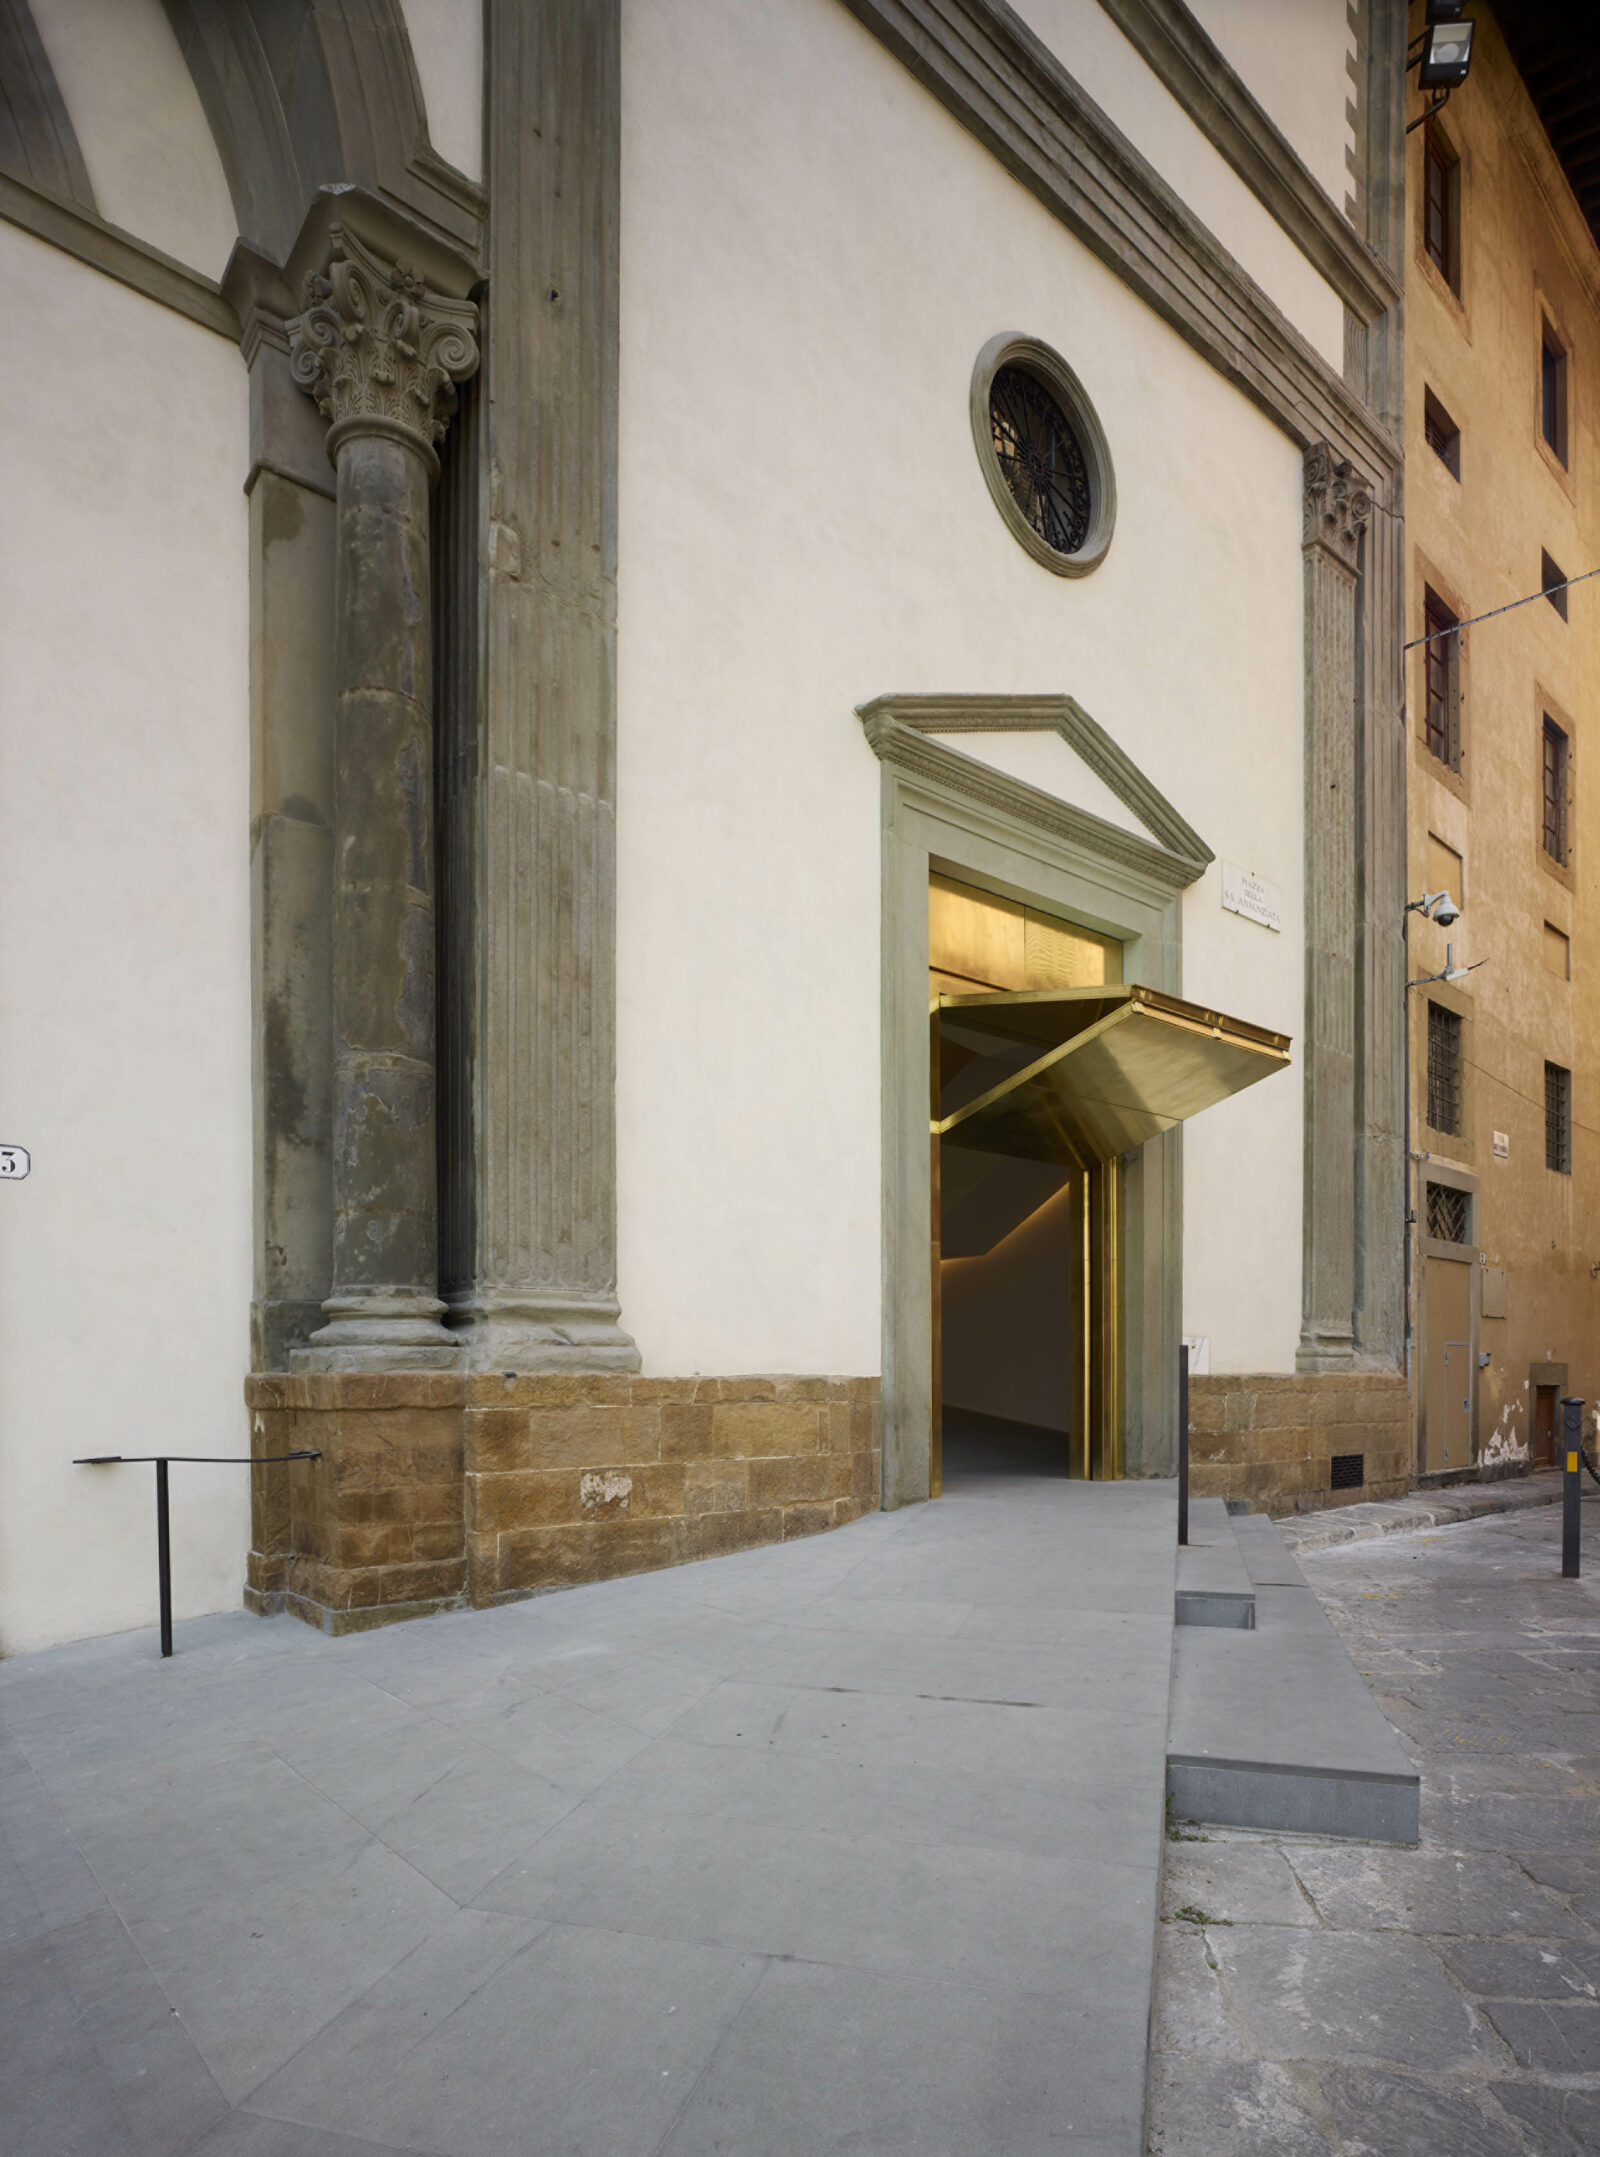 Exteriorof the Innocenti Museum